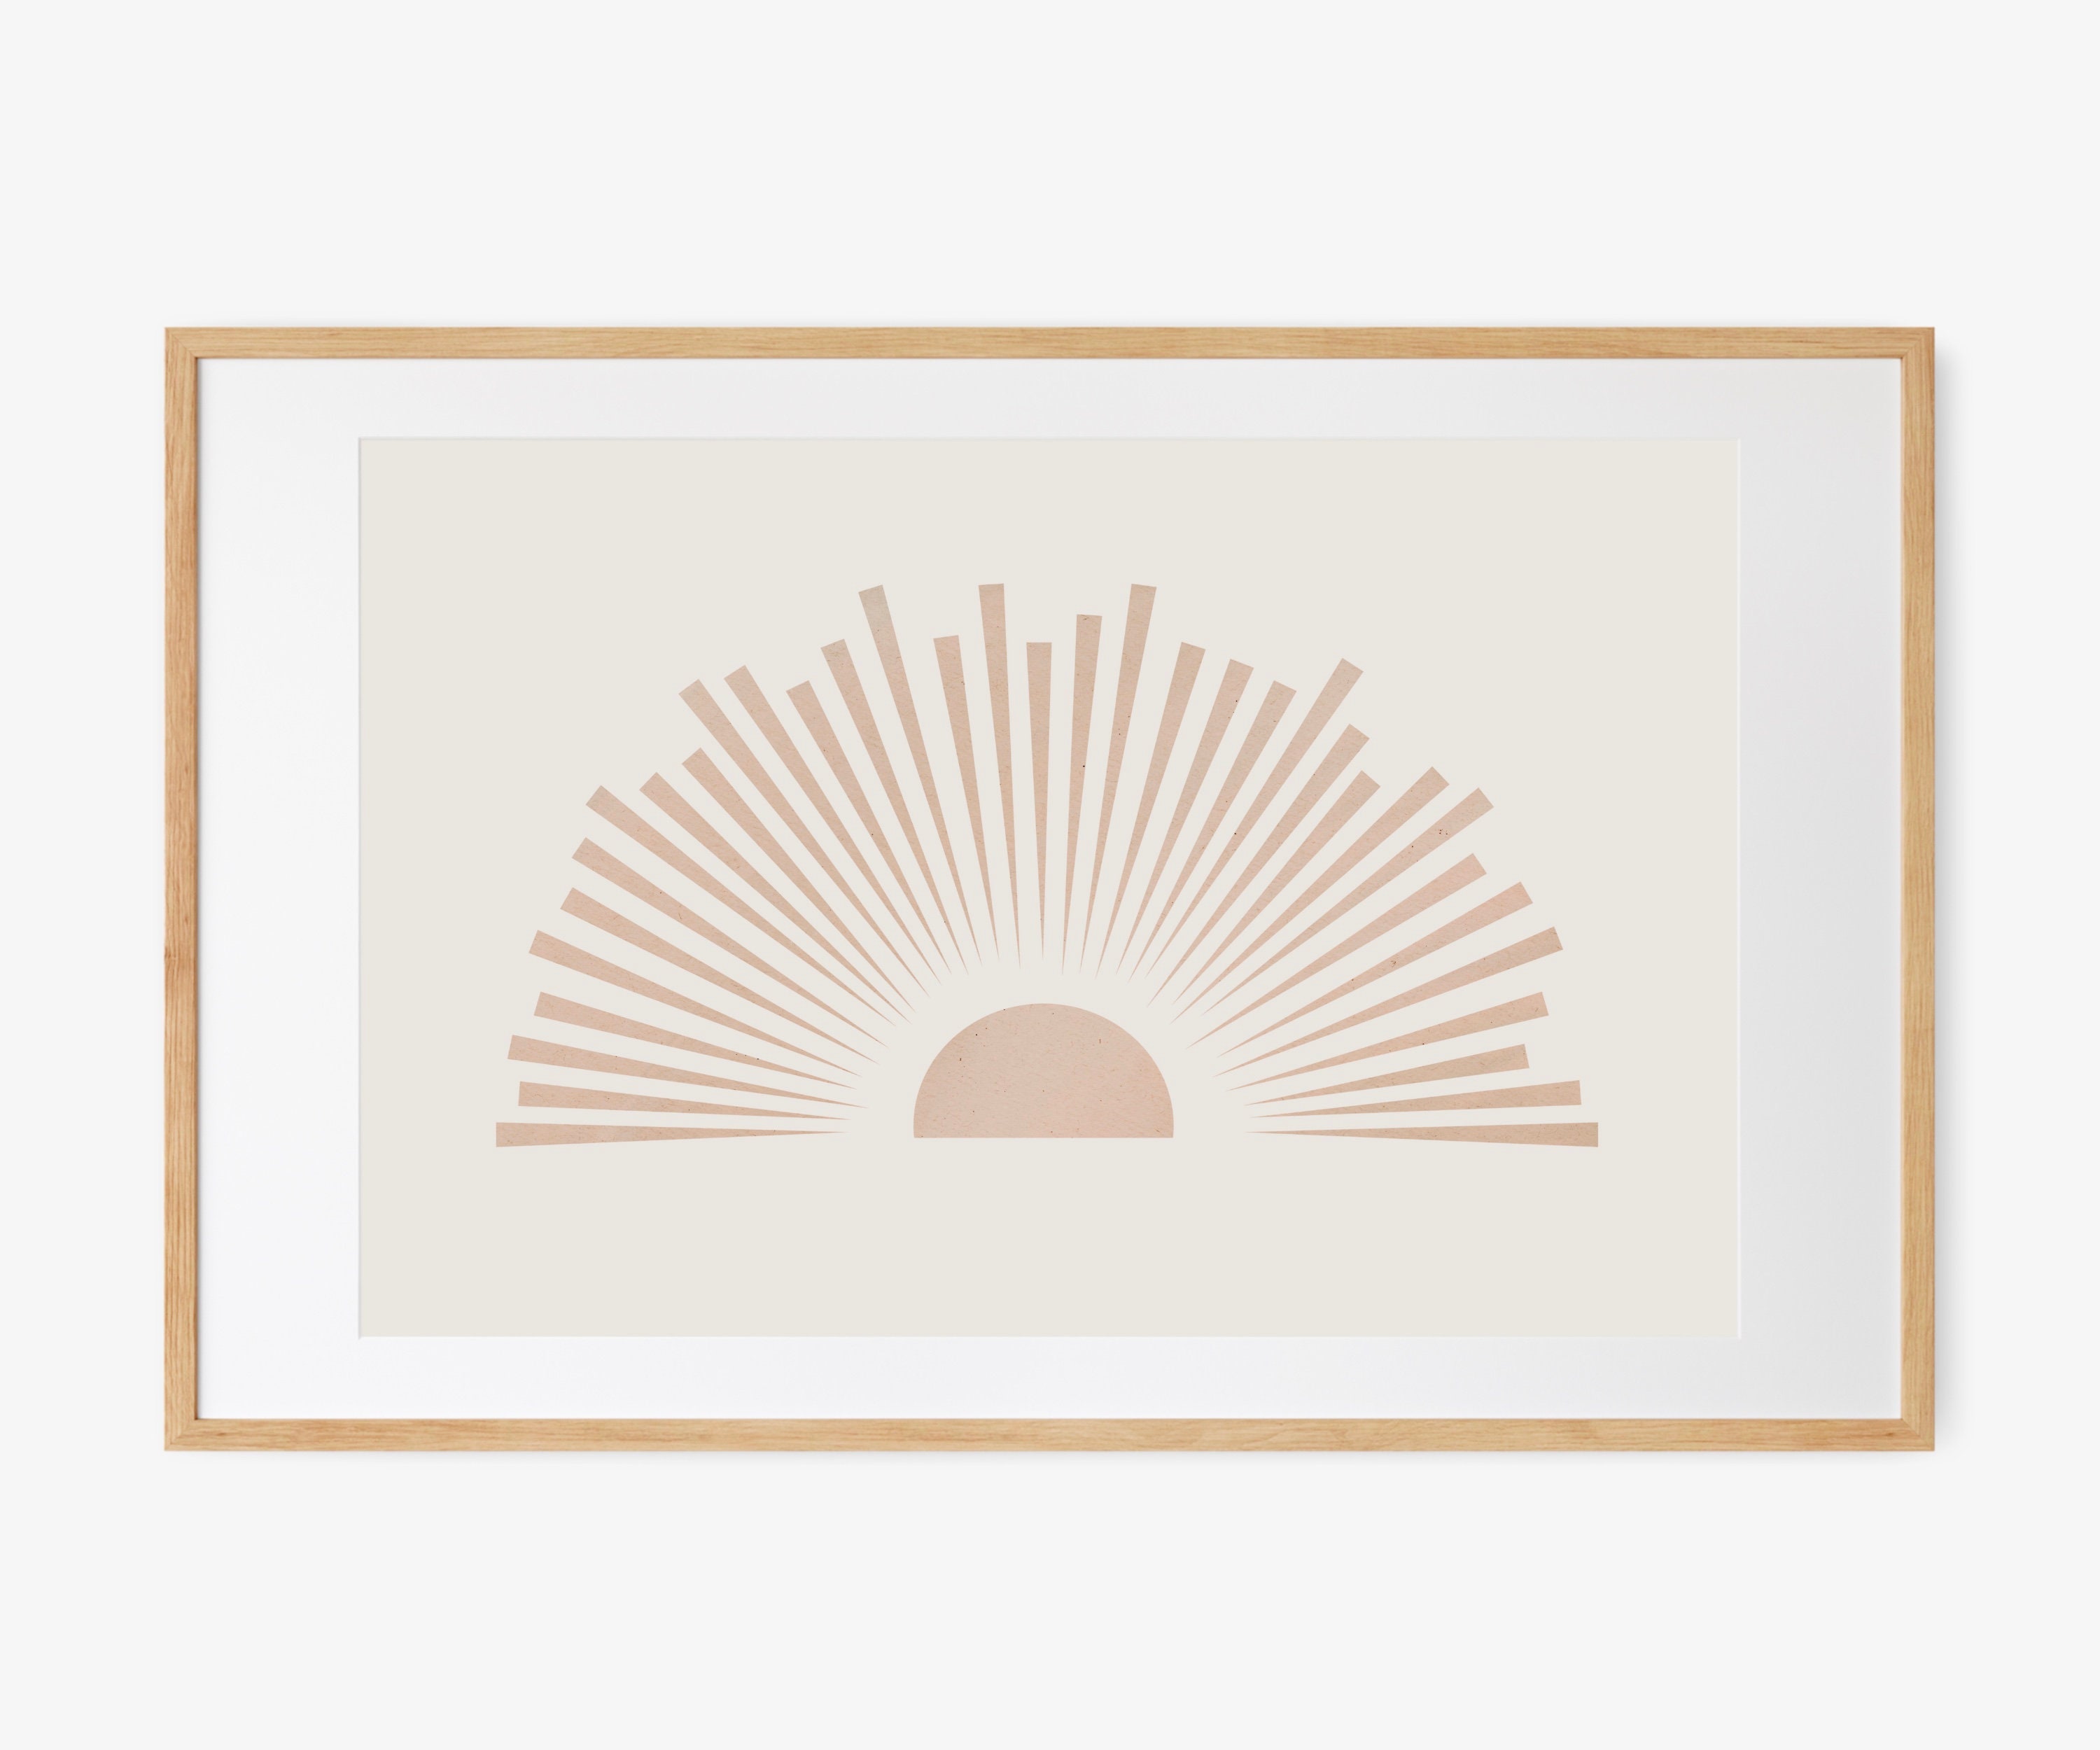 Abstract Sun Printable Minimalist Printable Wall Art Modern | Etsy